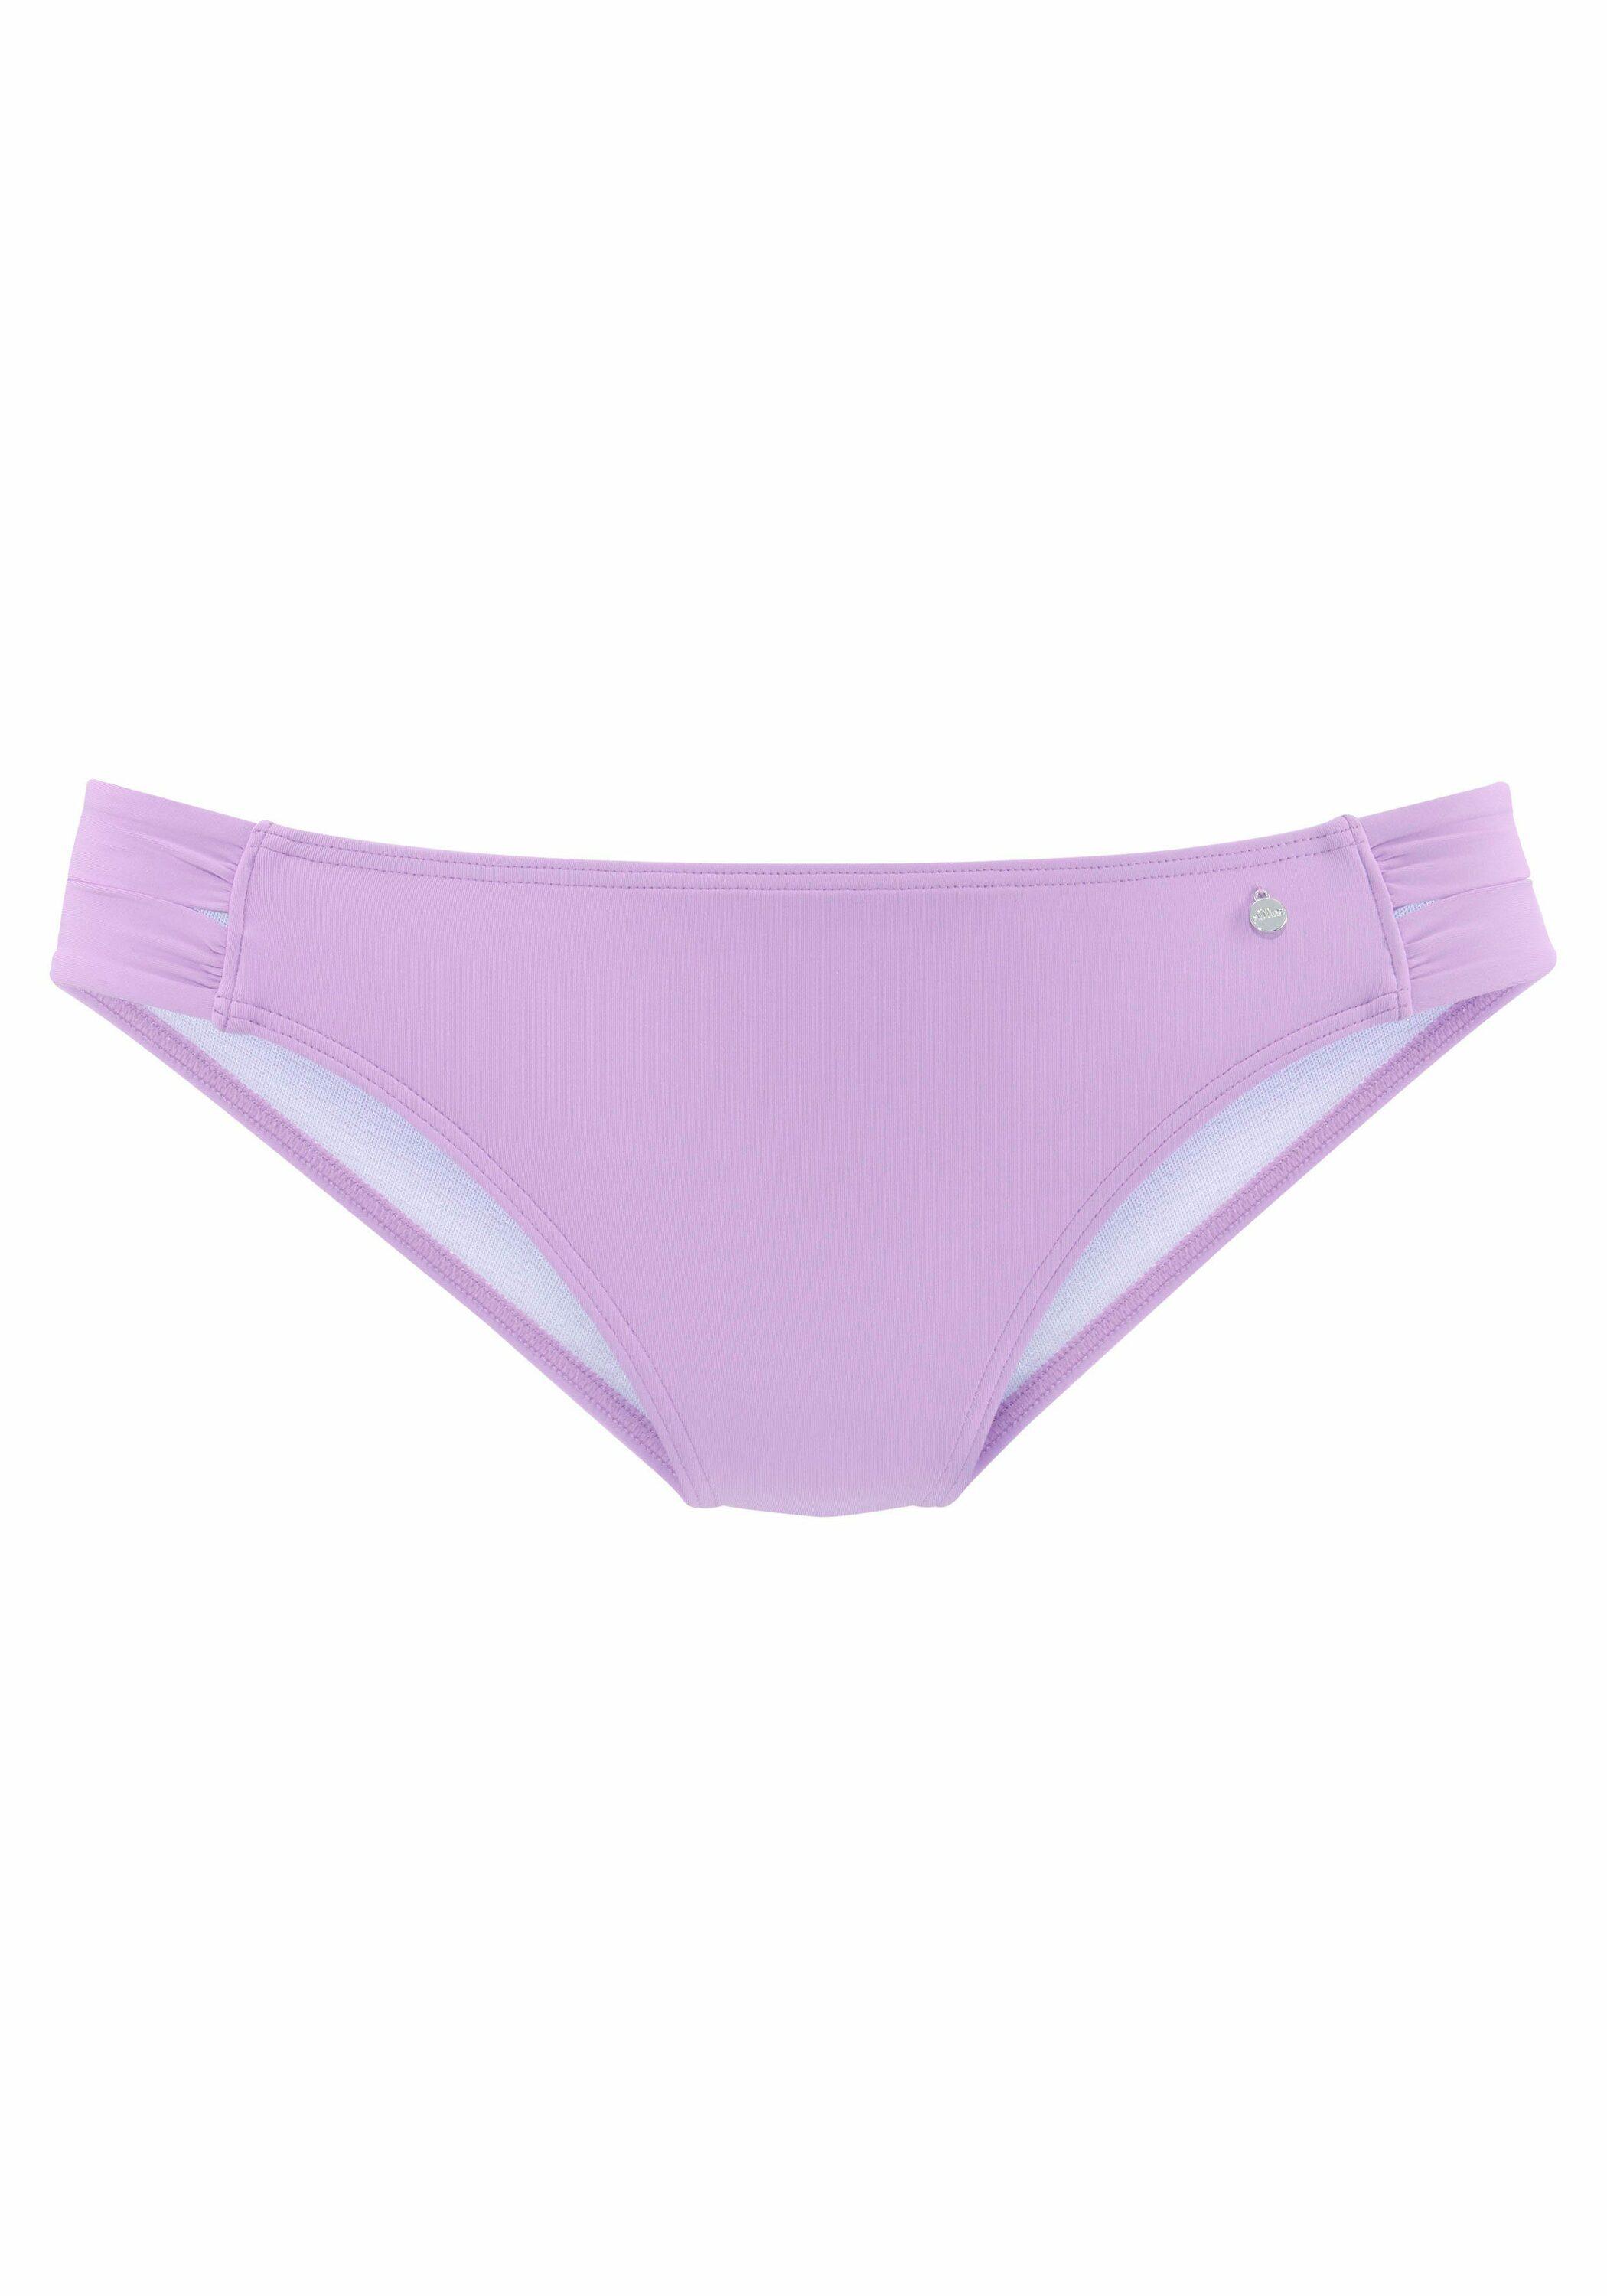 S.OLIVER Bikini Hose Damen SportScheck kaufen von Online Shop lila im